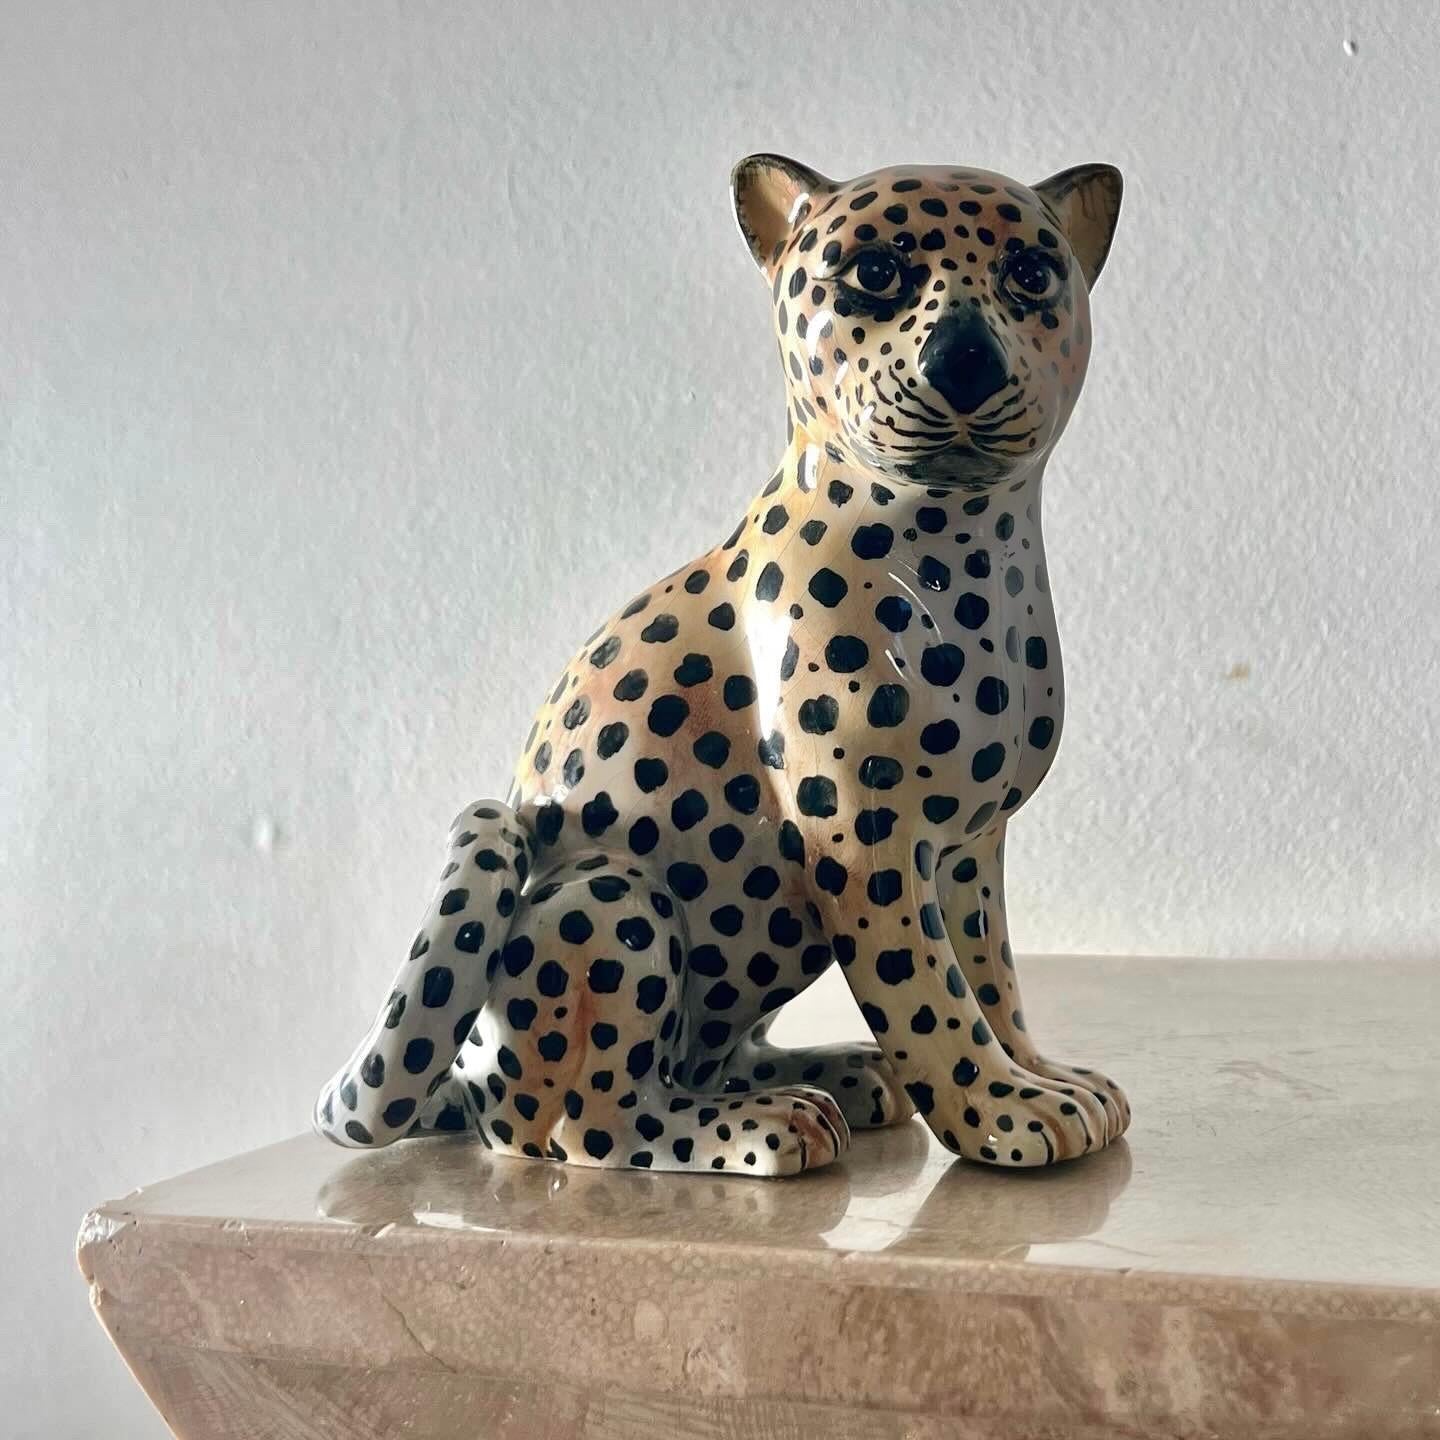 IL FELINA: eine italienische Keramikskulptur eines Leoparden, 1960er Jahre. Möglicherweise Porzellan. Abholung in Central West Los Angeles oder Versand weltweit. 
6